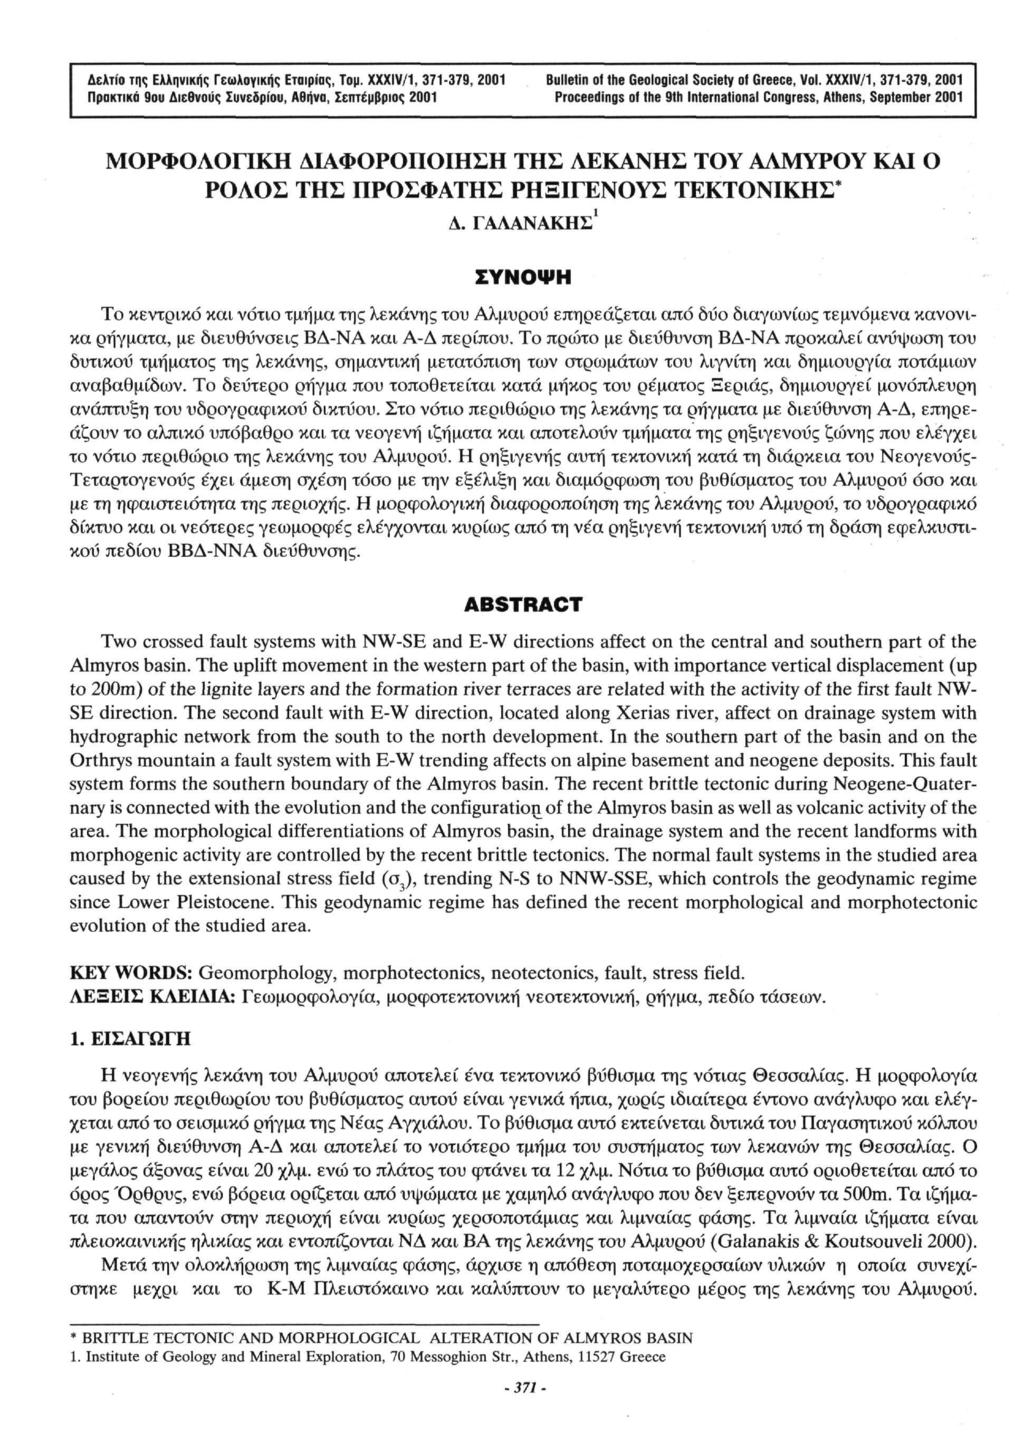 Δελτίο της Ελληνικής Γεωλογικής Εταιρίας, Τομ. XXXIV/1, 371-379, 2001 Bulletin of the Geological Society of Greece, Vol.